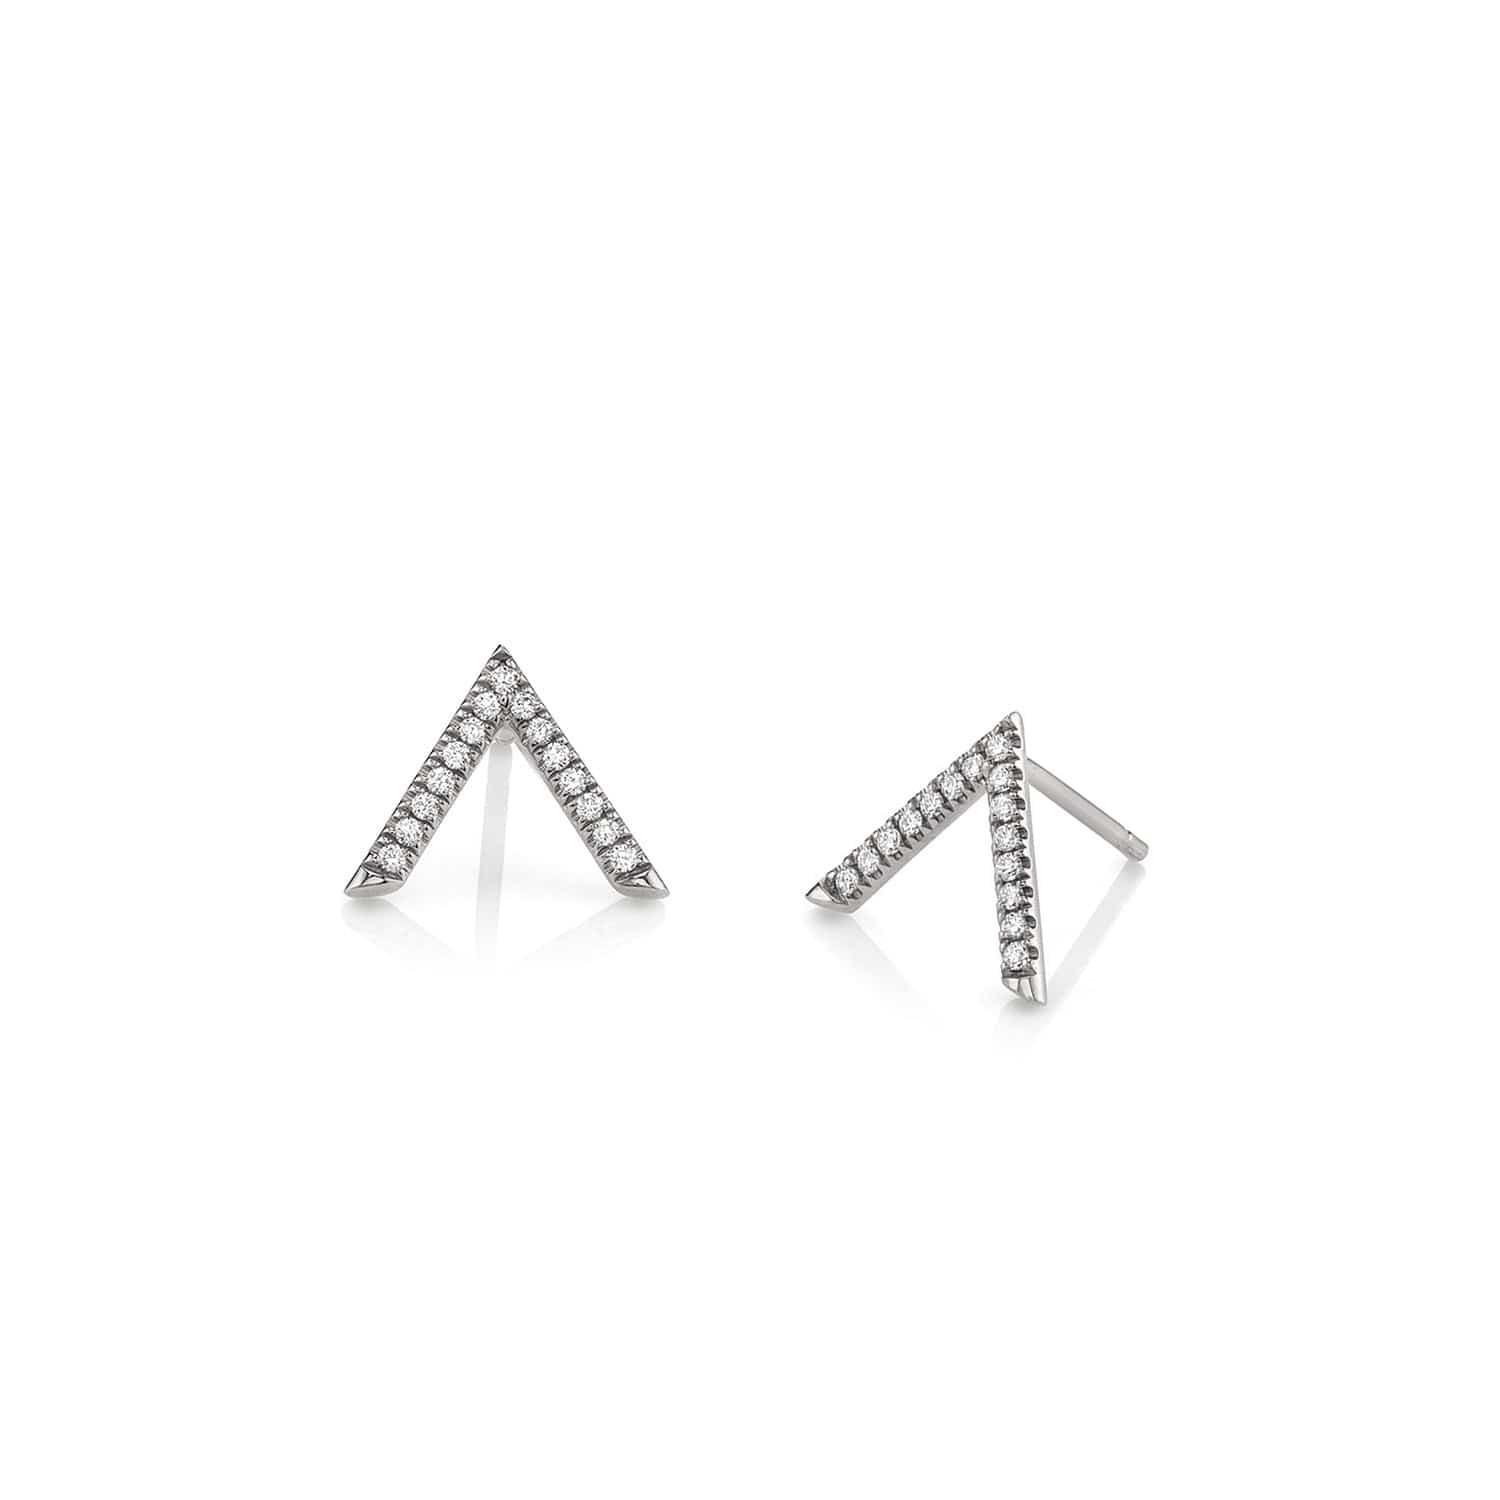 MICHAEL M Earrings 14K White Gold Single V Diamond Stud Earrings ER267WG